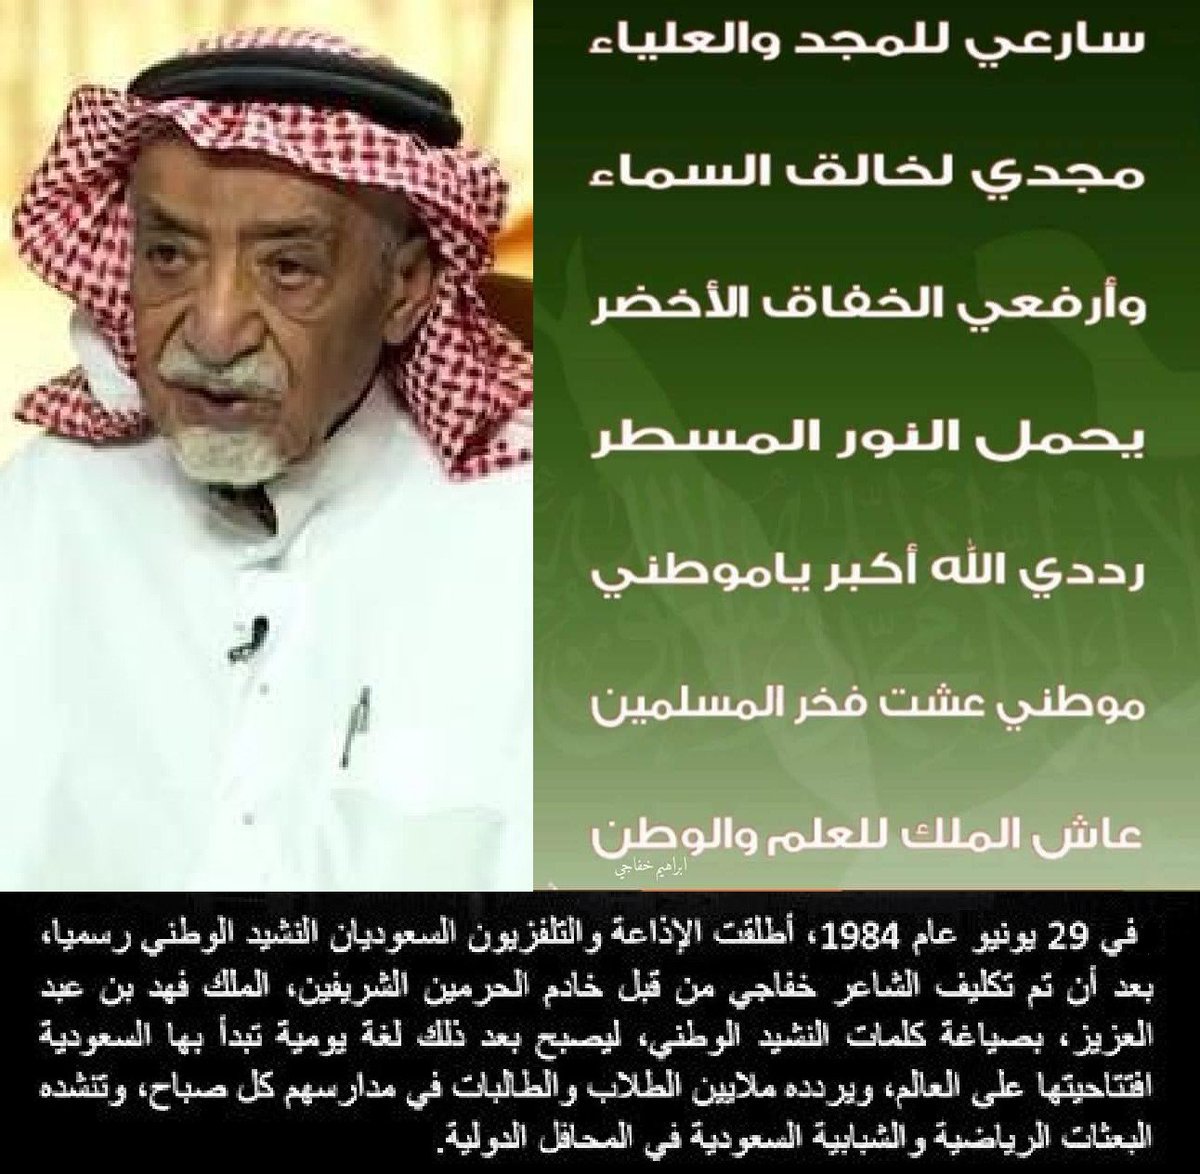 ذاكرة الماضي الجميل sur Twitter : "مؤلف النشيد الوطني السعودي ...